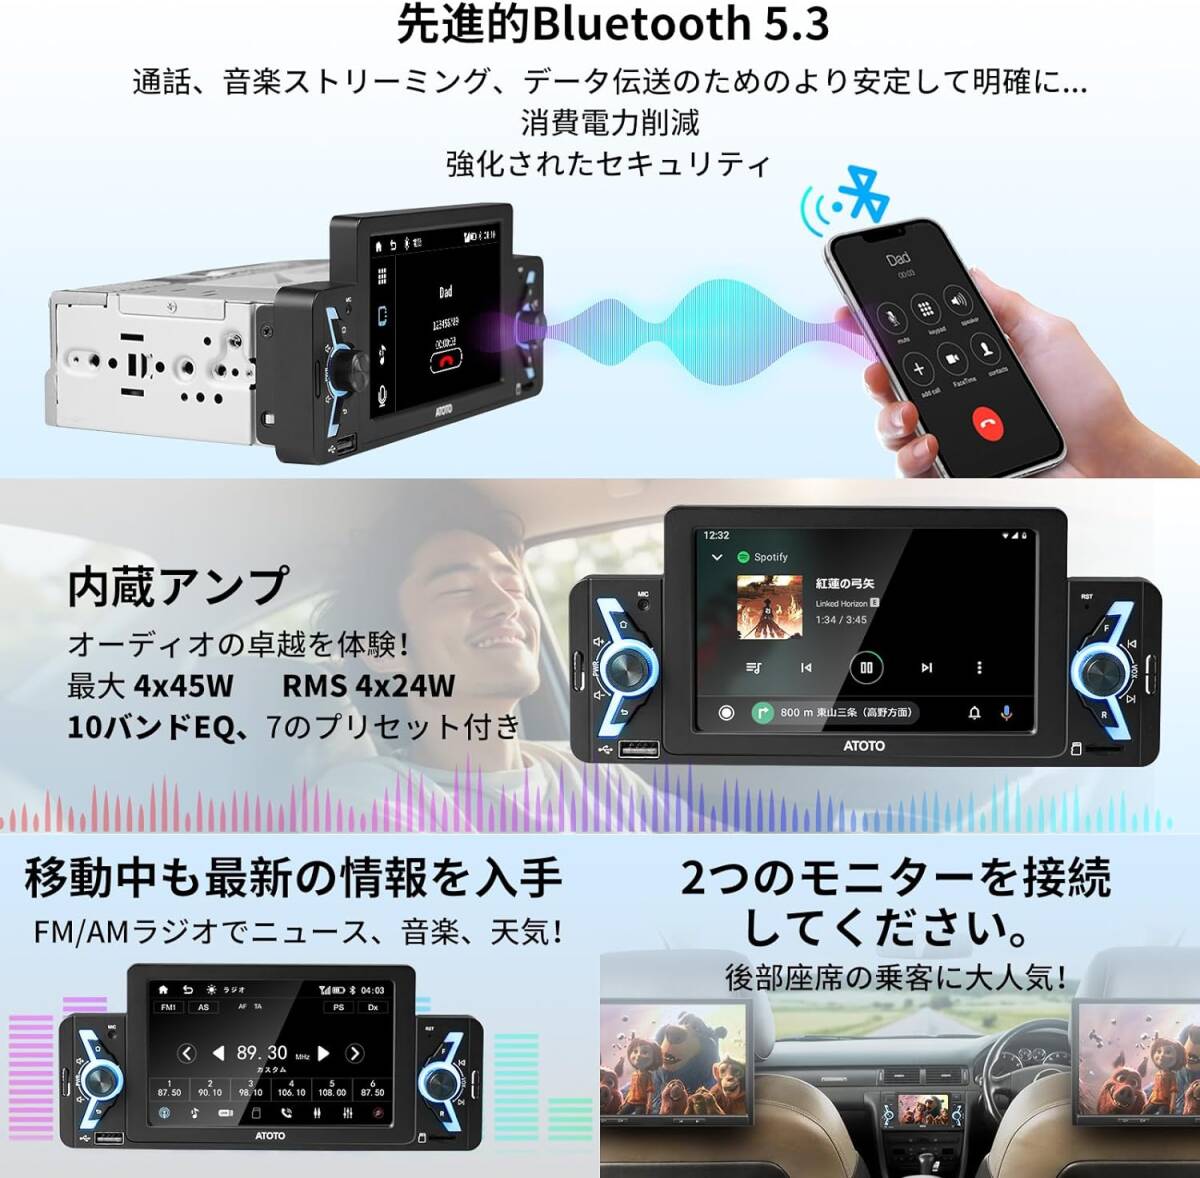 ATOTO F7WE 1DIN 5インチタッチスクリーンカーナビF7G1A5WEBluetooth、Carplay Android Auto ワイヤレス 5インチタッチスクリーンカーナビの画像4